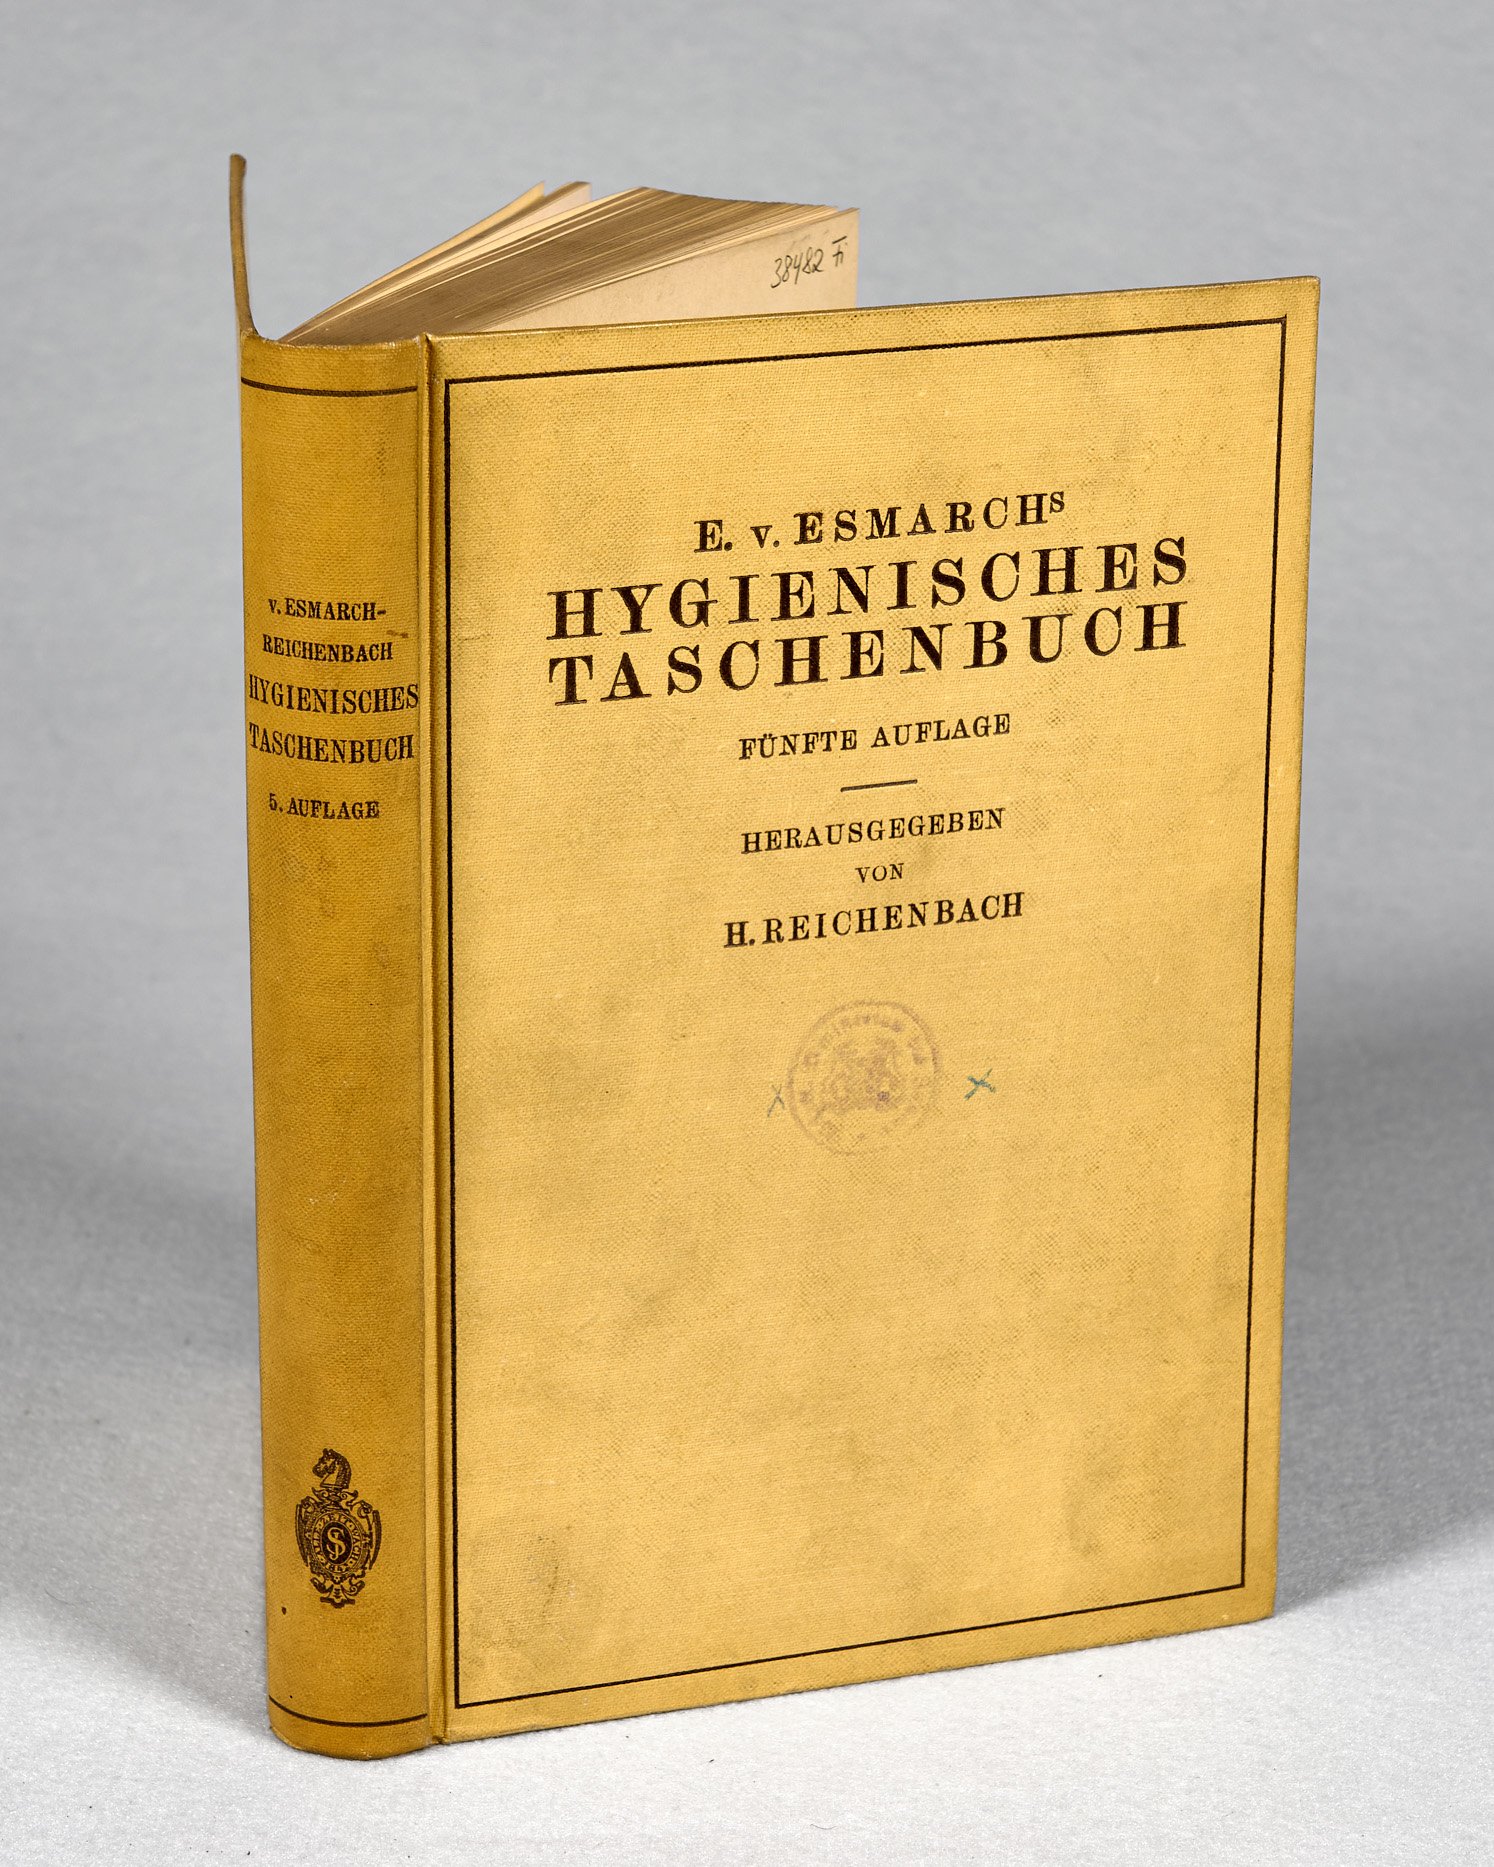 E. v. Esmarchs Hygienisches Taschenbuch, Fünfte Auflage (Wilhelm-Fabry-Museum CC BY-NC-SA)